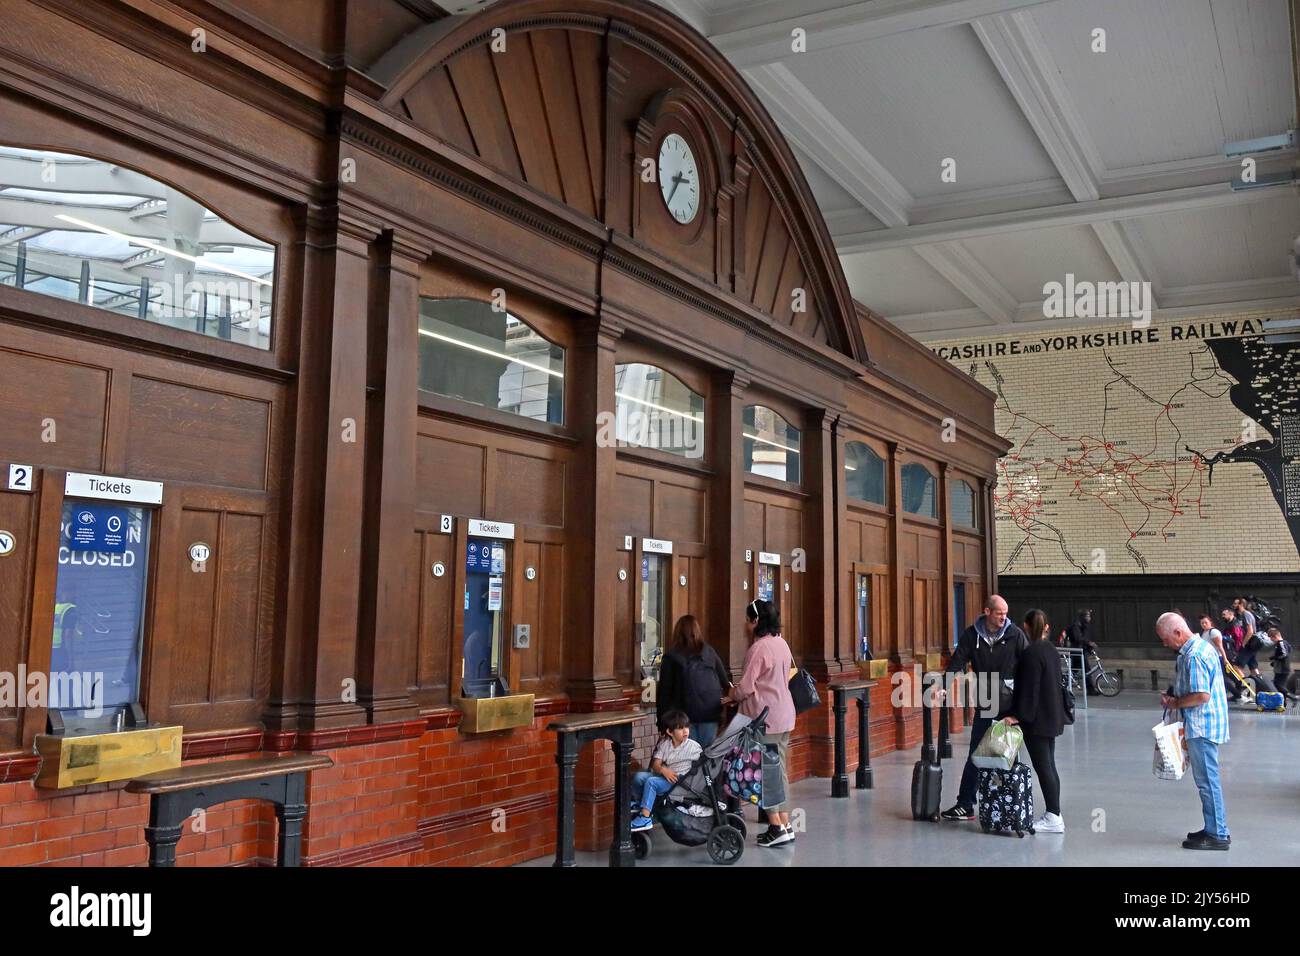 All'interno della stazione ferroviaria di Manchester Victoria, con le finestre originali della biglietteria, la stazione ferroviaria di Victoria, Manchester, Inghilterra, Regno Unito, M3 1WY Foto Stock